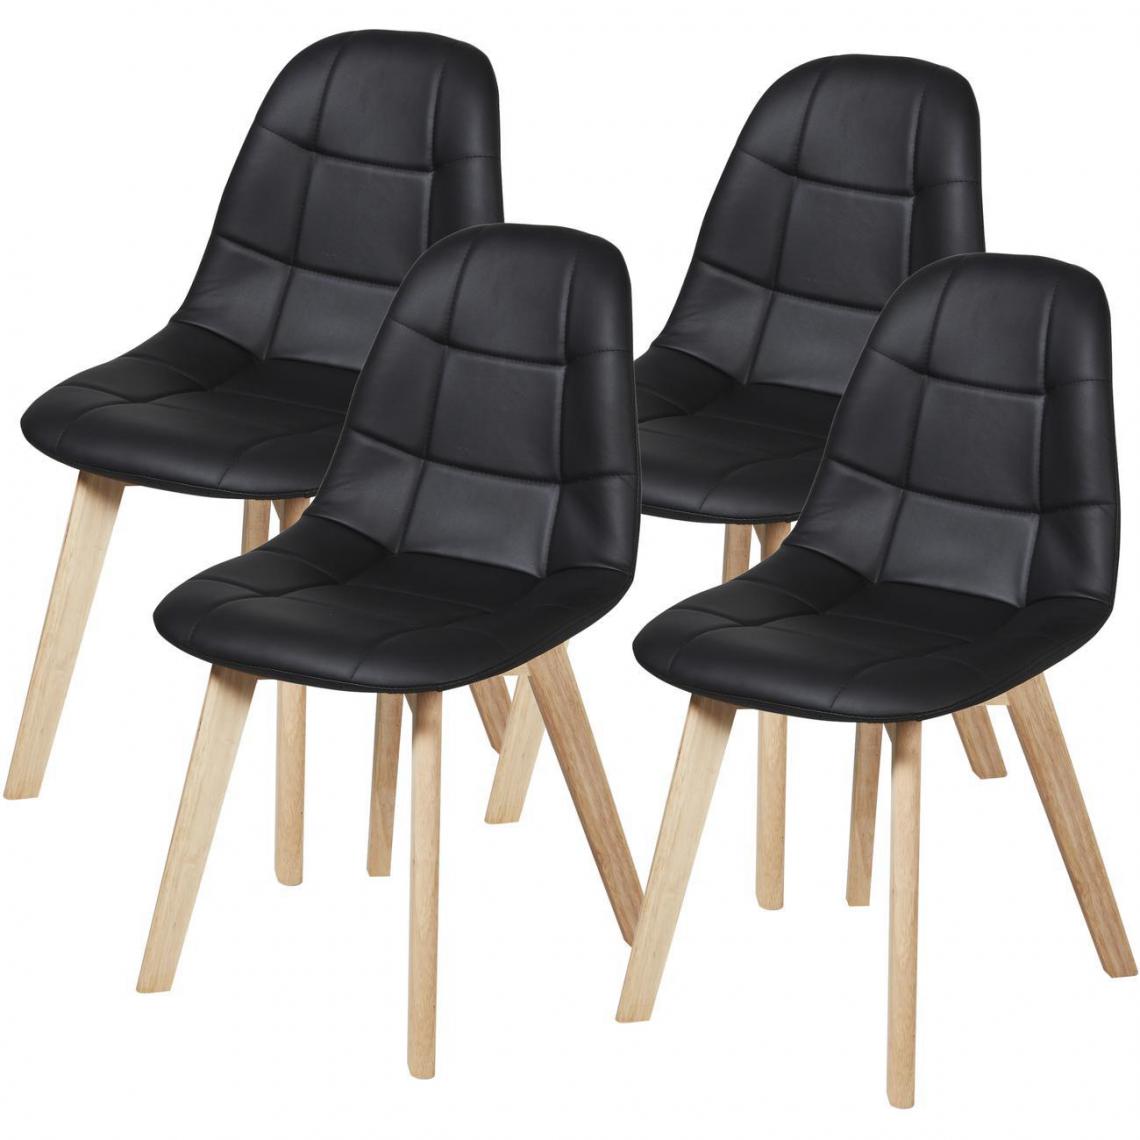 ATHM DESIGN - Lot de 4 - Chaise SULTA Noir - assise Cuir PU pieds Bois - Chaises